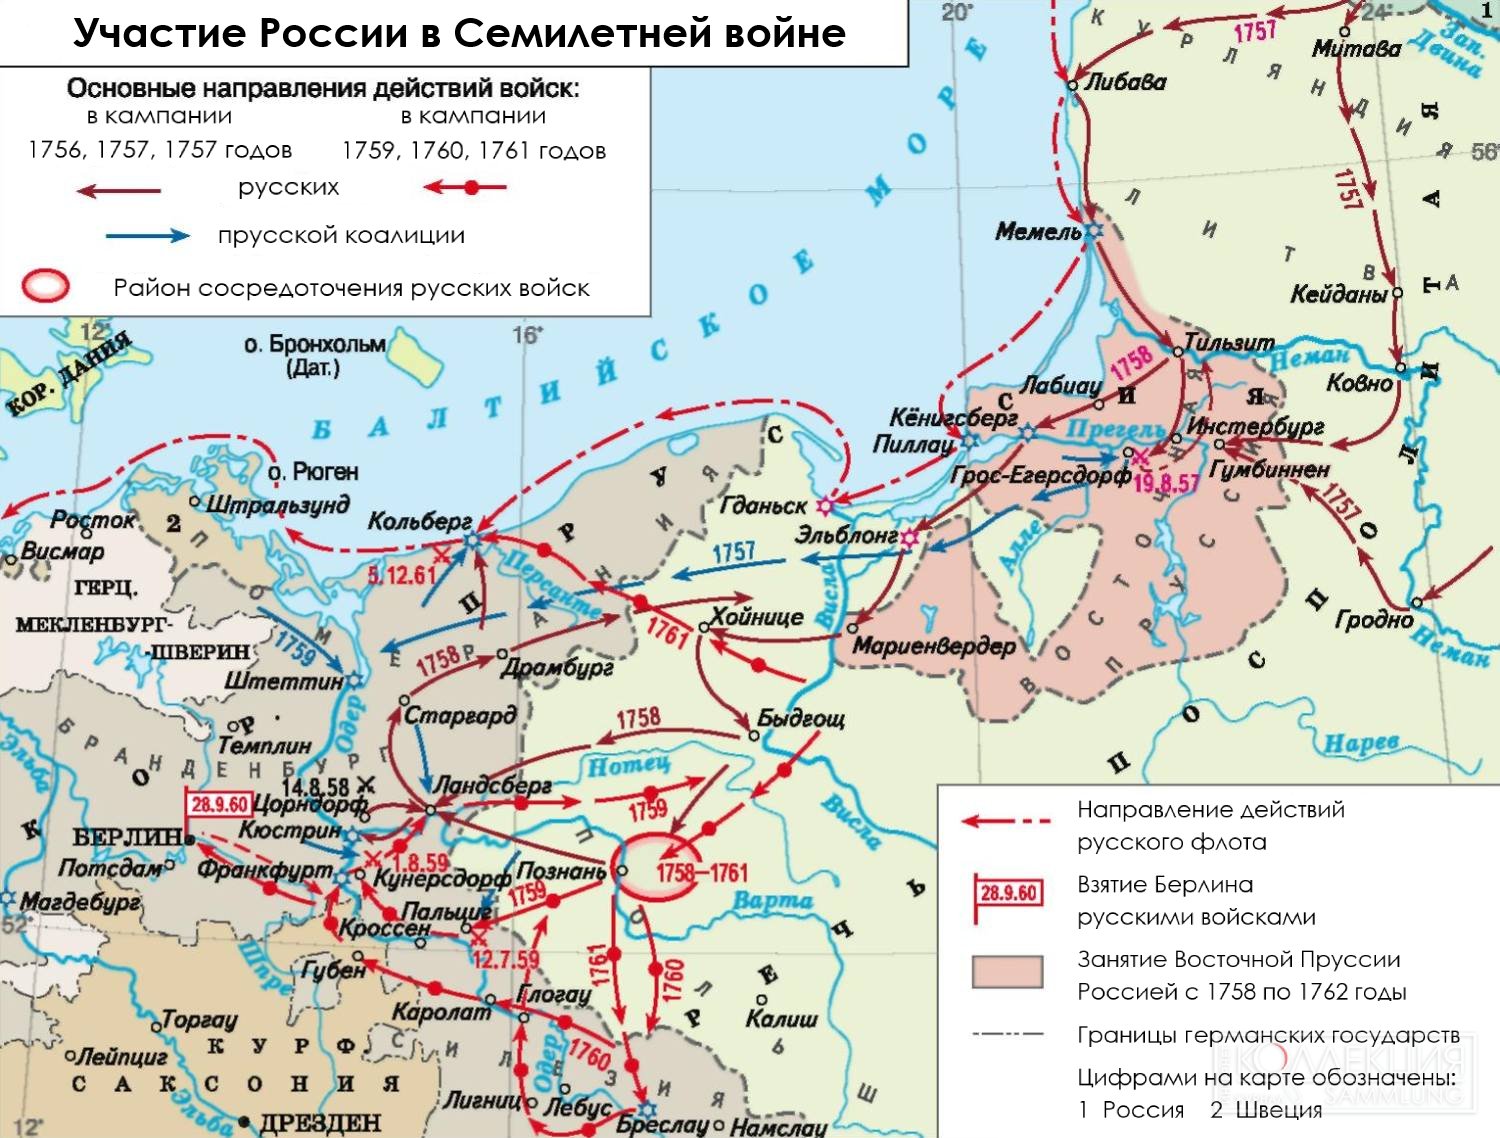 Карта участия России в Семилетней войне